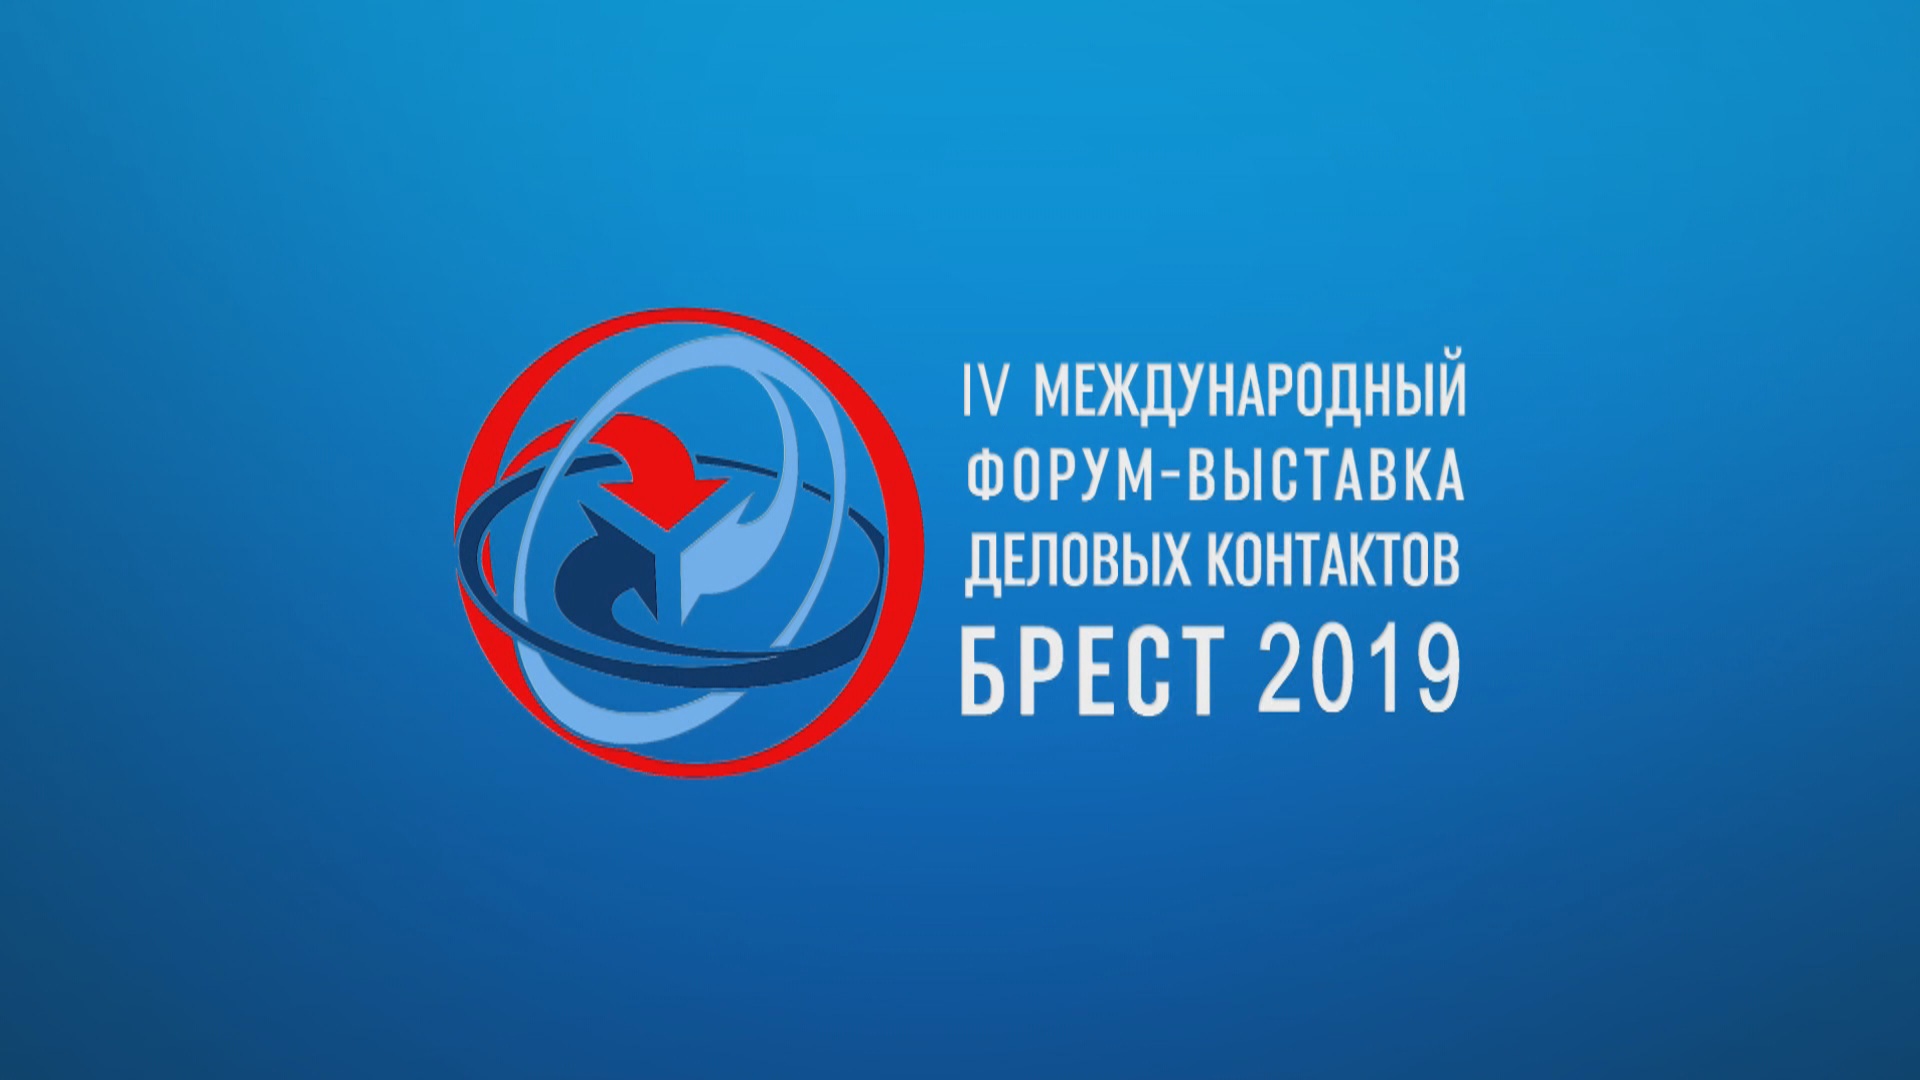 IV Международный форум-выставка деловых контактов "Брест 2019" (2)